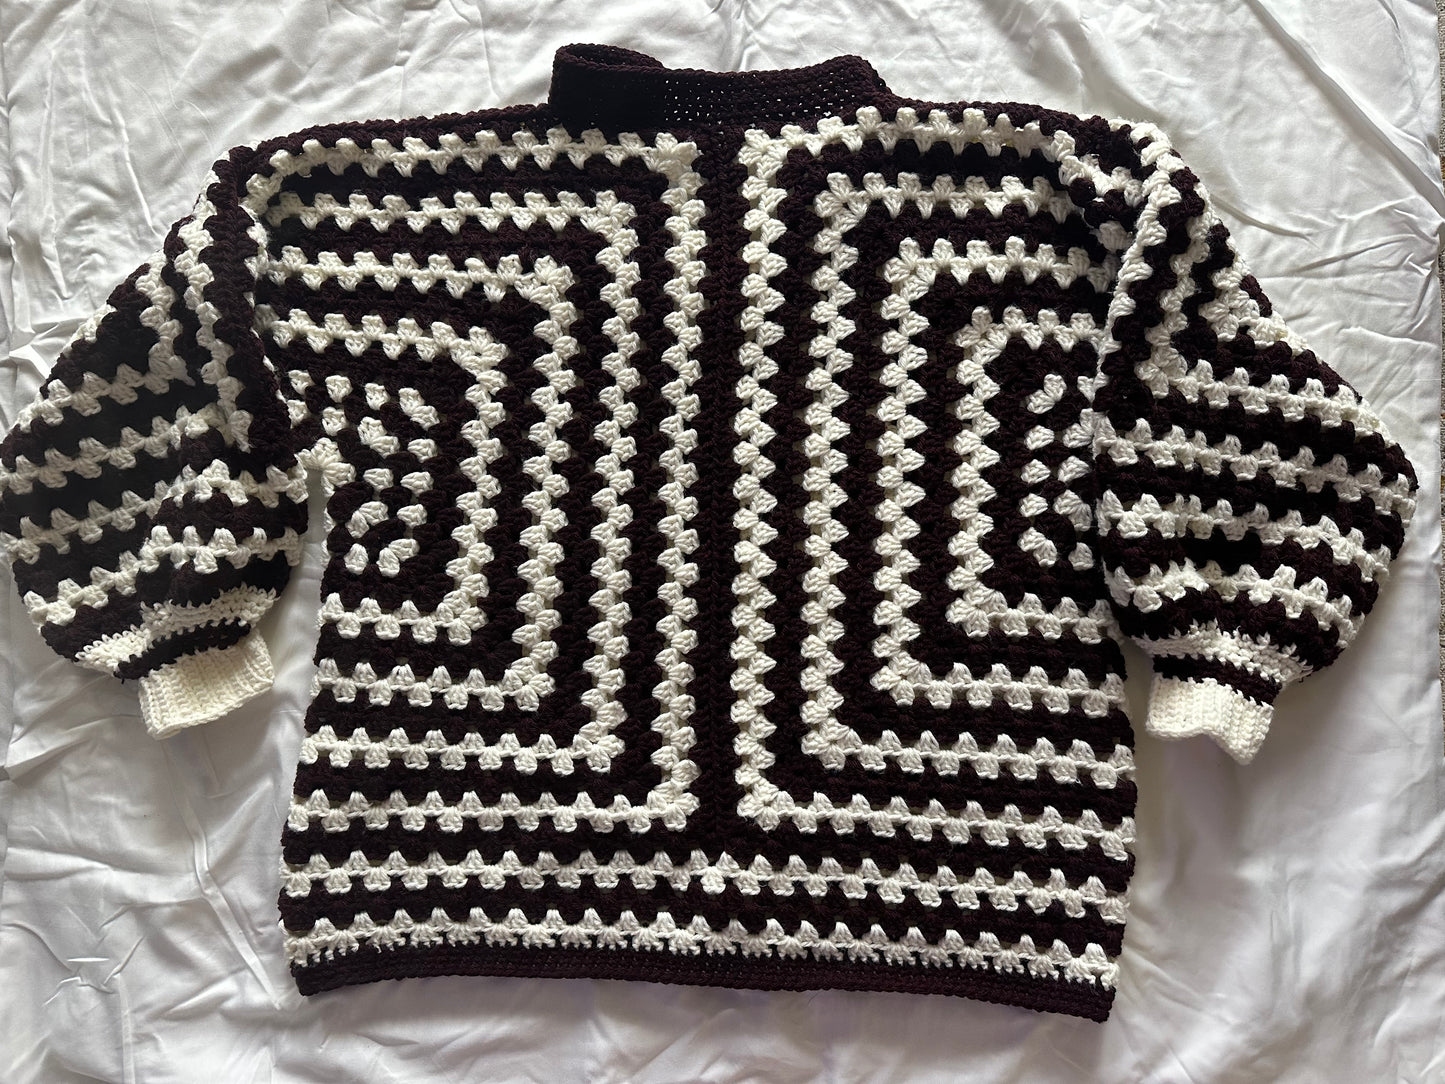 Crochet Pullover